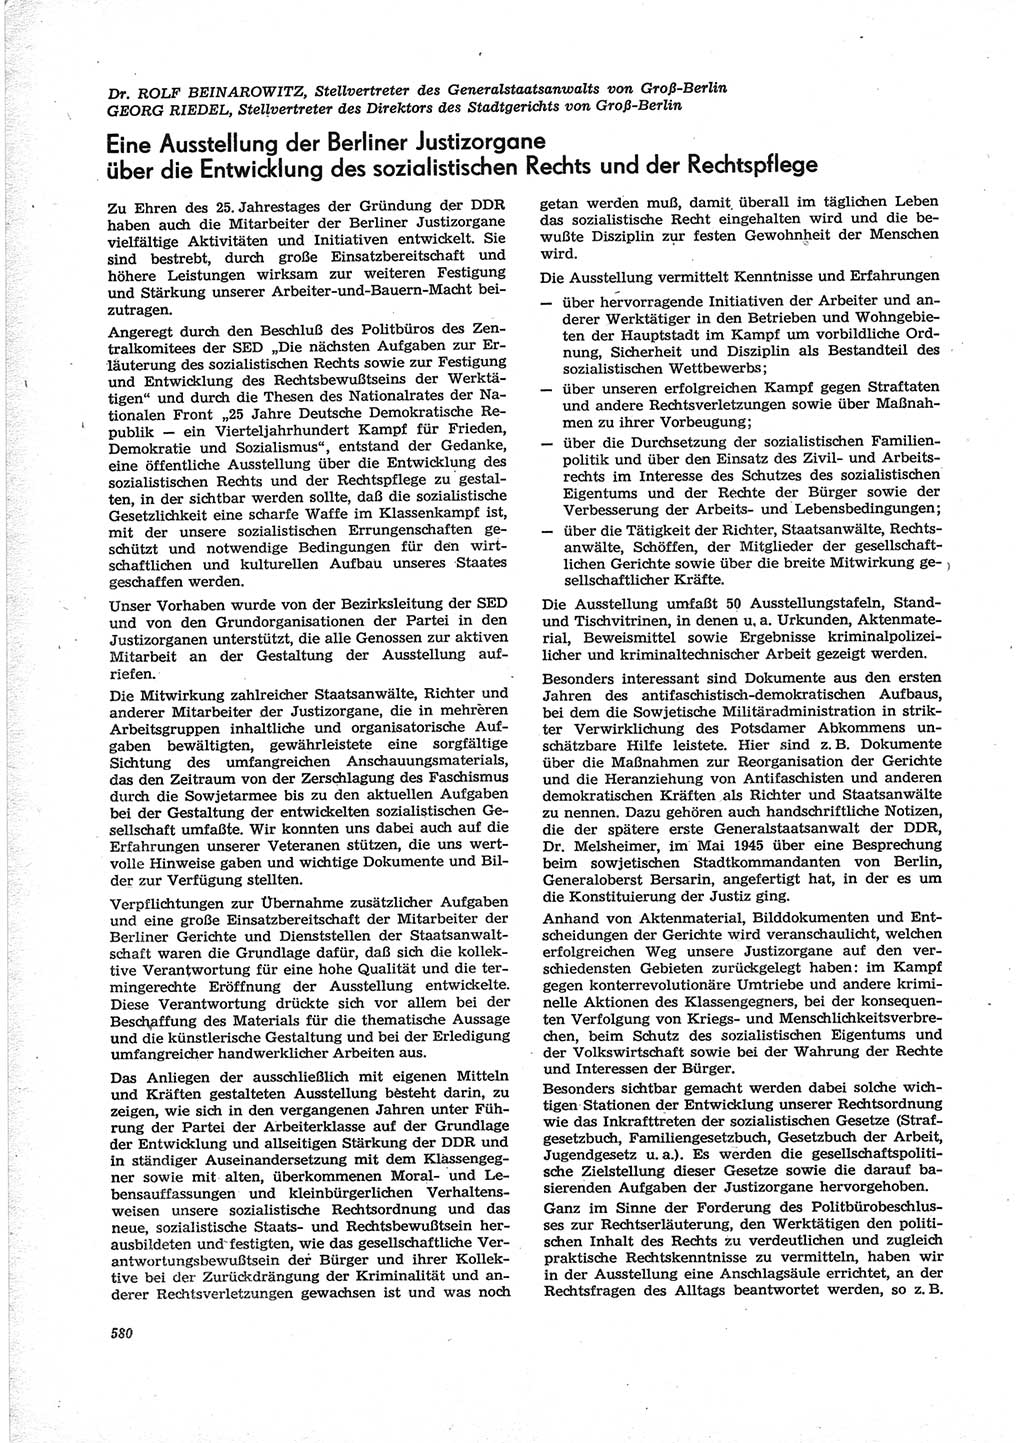 Neue Justiz (NJ), Zeitschrift für Recht und Rechtswissenschaft [Deutsche Demokratische Republik (DDR)], 28. Jahrgang 1974, Seite 580 (NJ DDR 1974, S. 580)